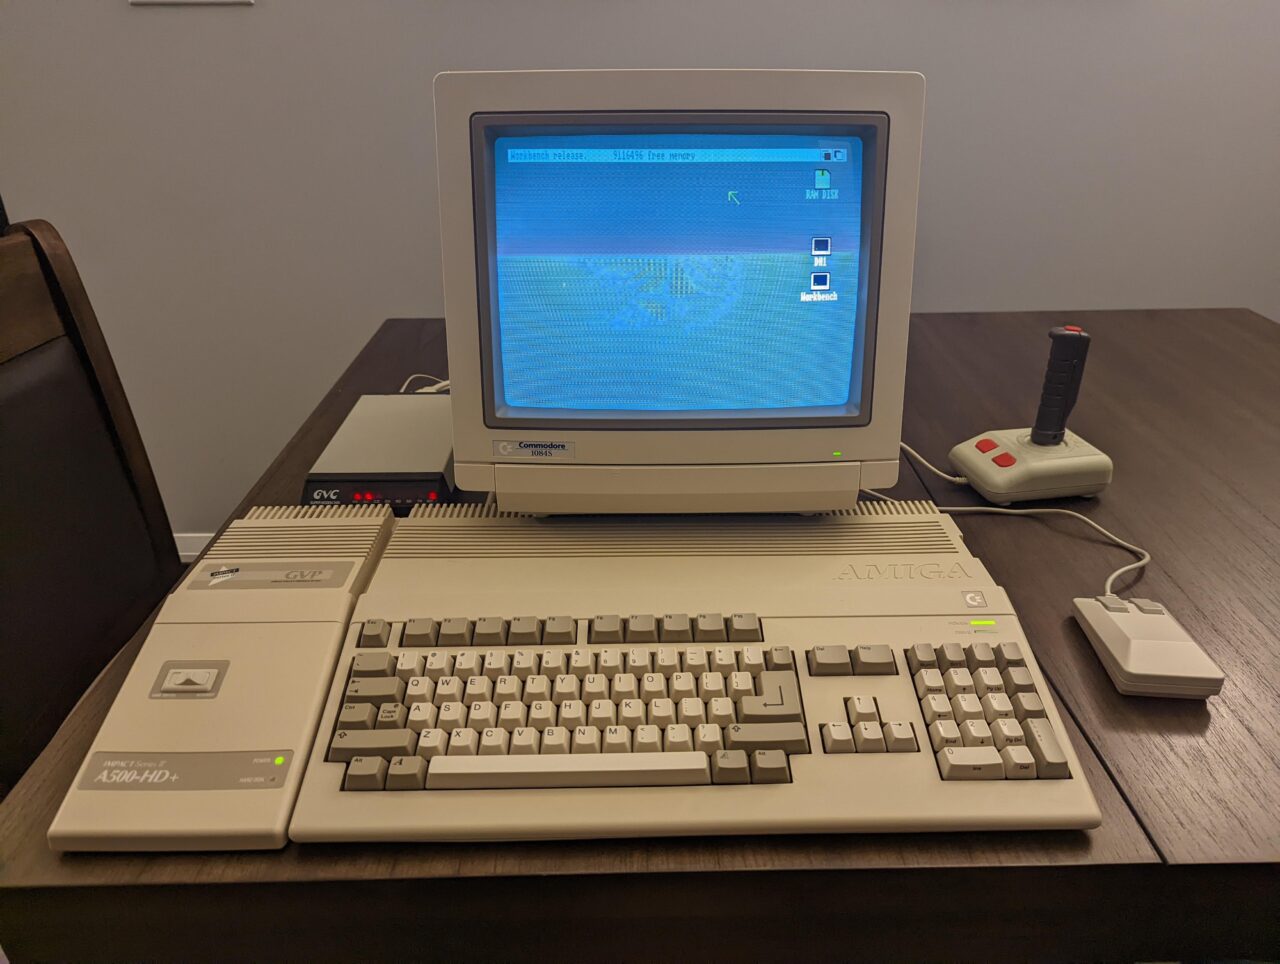 Amiga 500 está en nuestra memoria para siempre.  El equipo premium tiene fanáticos hasta el día de hoy.